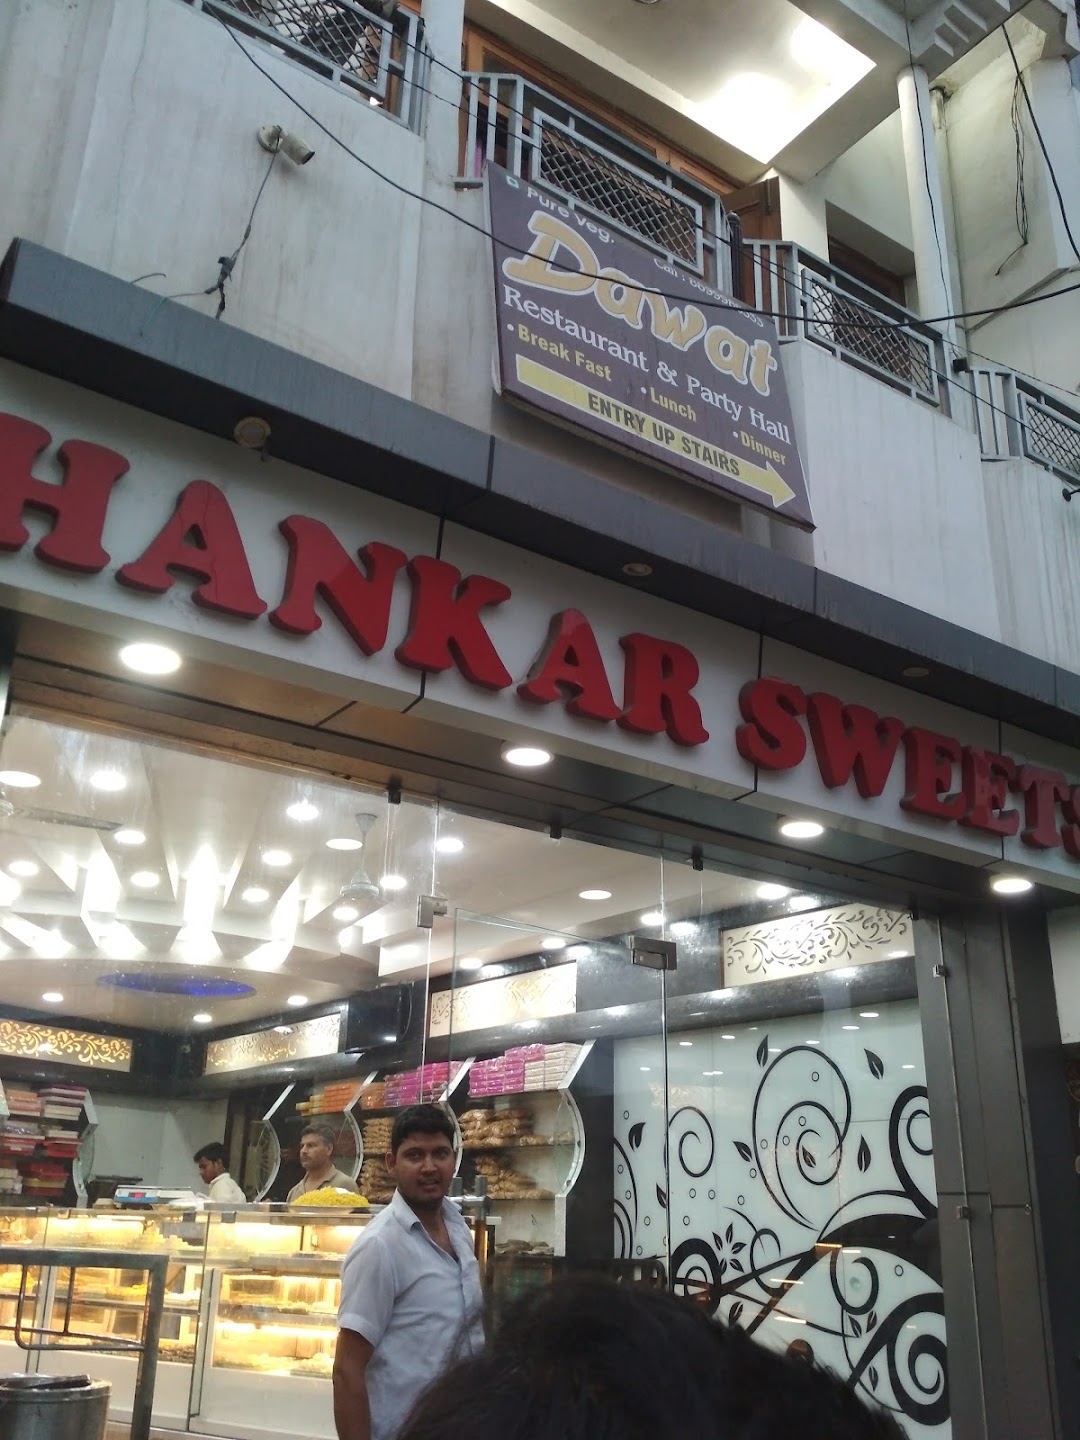 Shankar Sweets